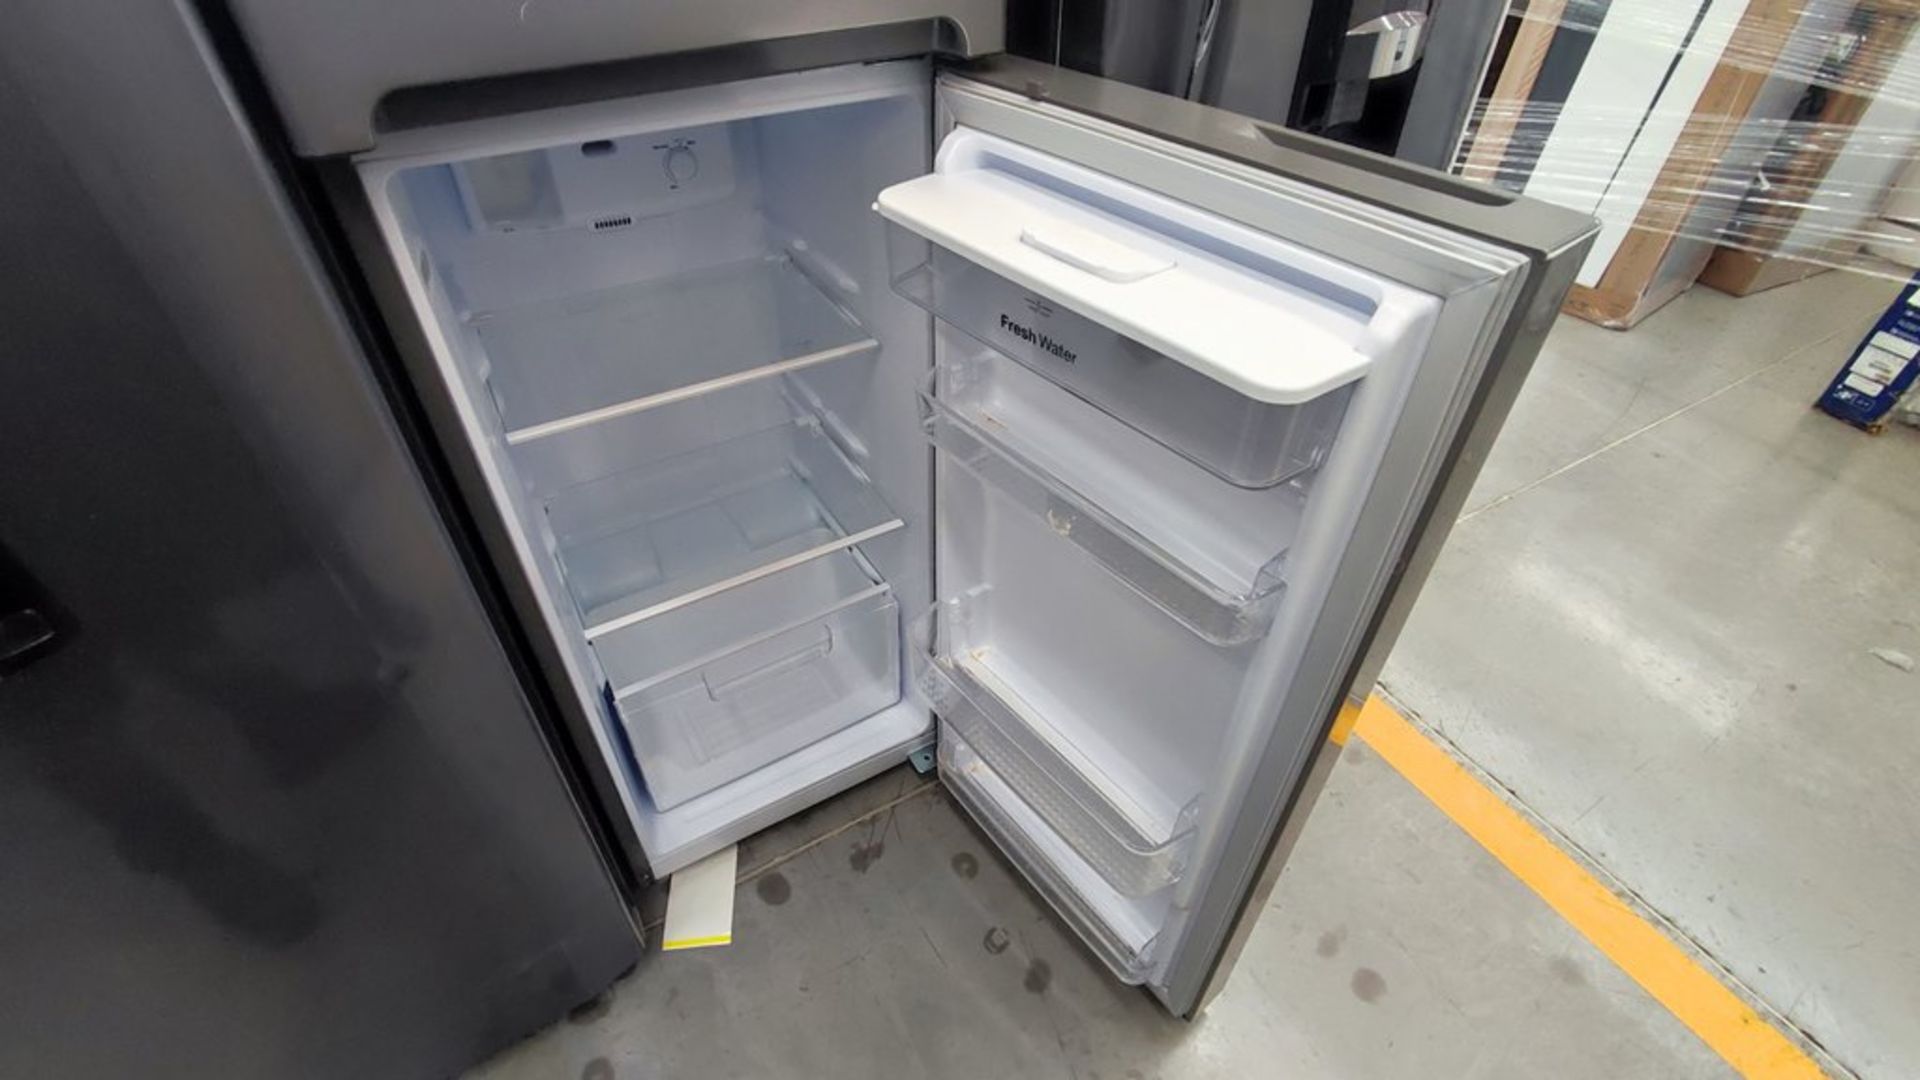 Lote de 2 refrigeradores contiene: 1 Refrigerador Marca Mabe, Modelo RMT400RY, No de serie 2202B401 - Image 13 of 15